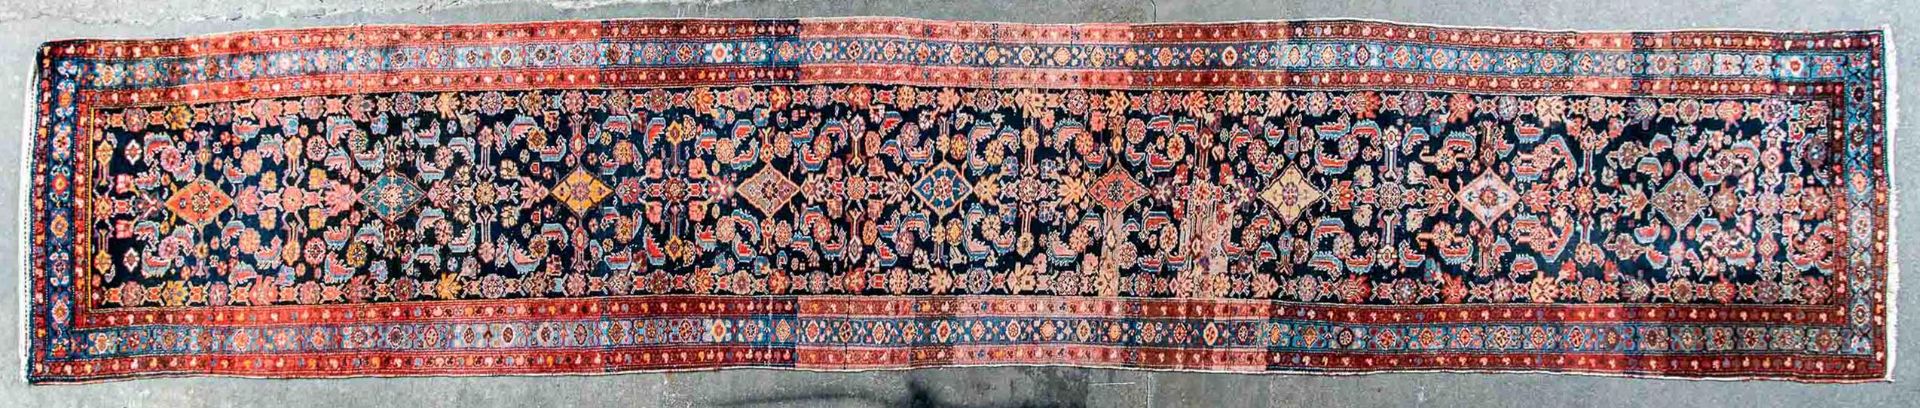 Alte oder antike indigoblau-grundige Teppichgalerie, Iran Mitte 20. Jhdt., ca. 102 x 528 cm. Stärke - Bild 3 aus 11